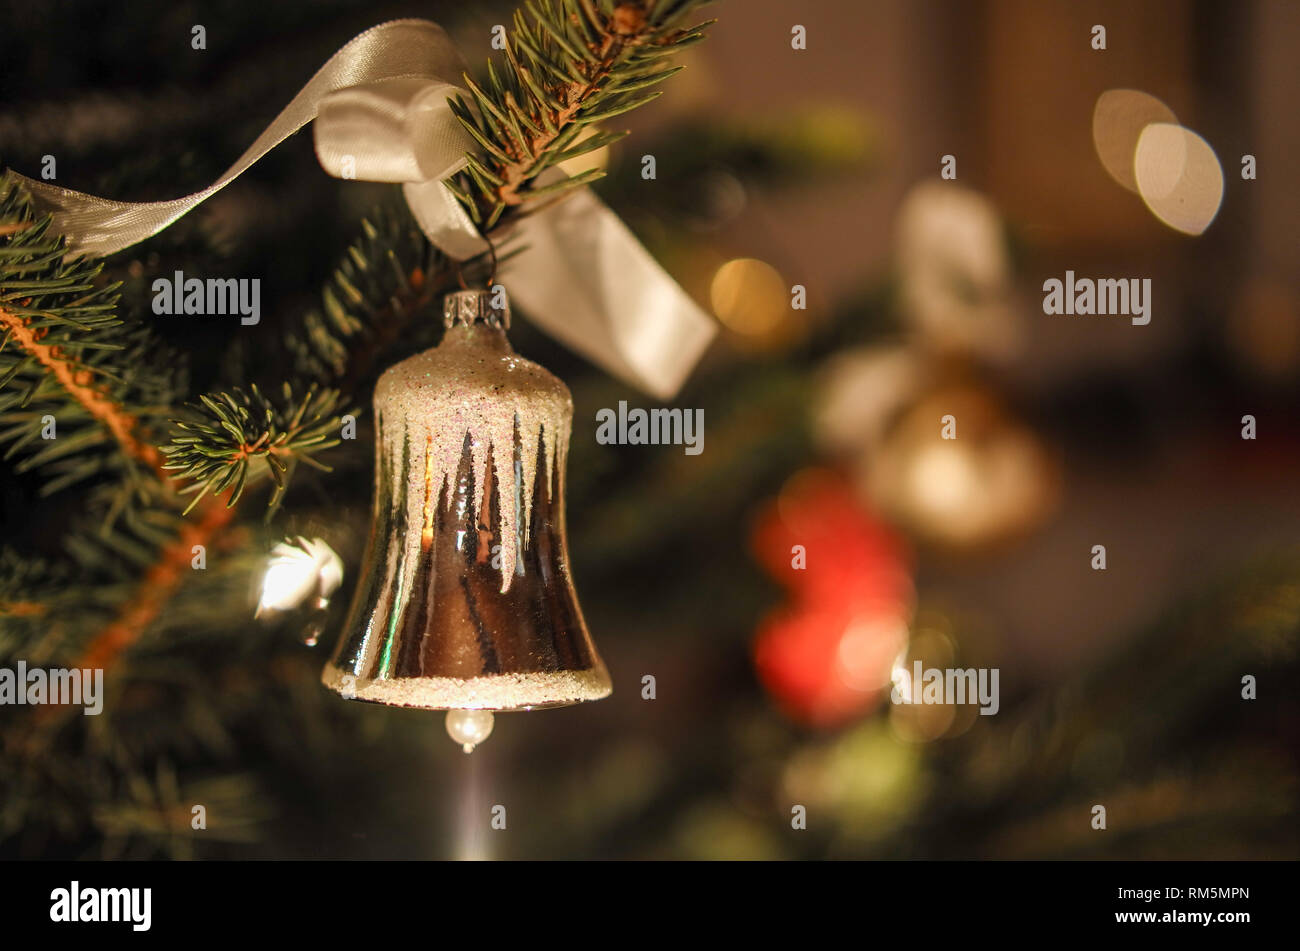 Weihnachtsschmuck, Christbaumschmuck, Weihnachten, Weihnachtsbaum Stock Photo